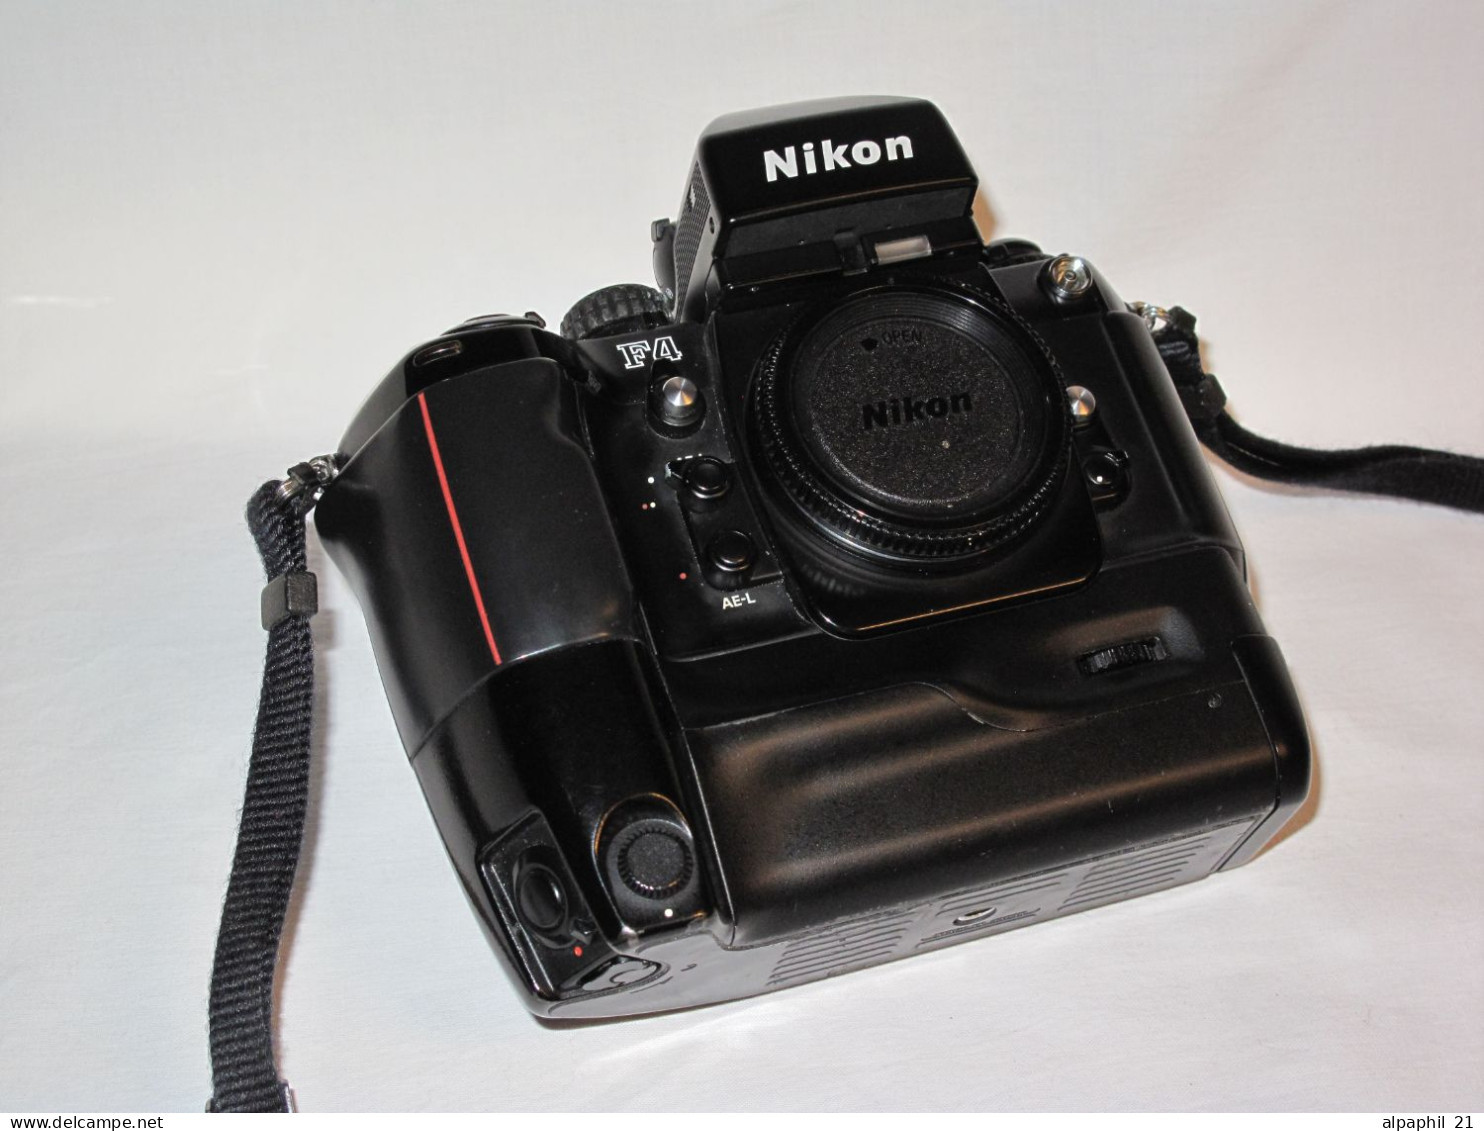 Nikon F 4E 35 mm SLR Film Camera